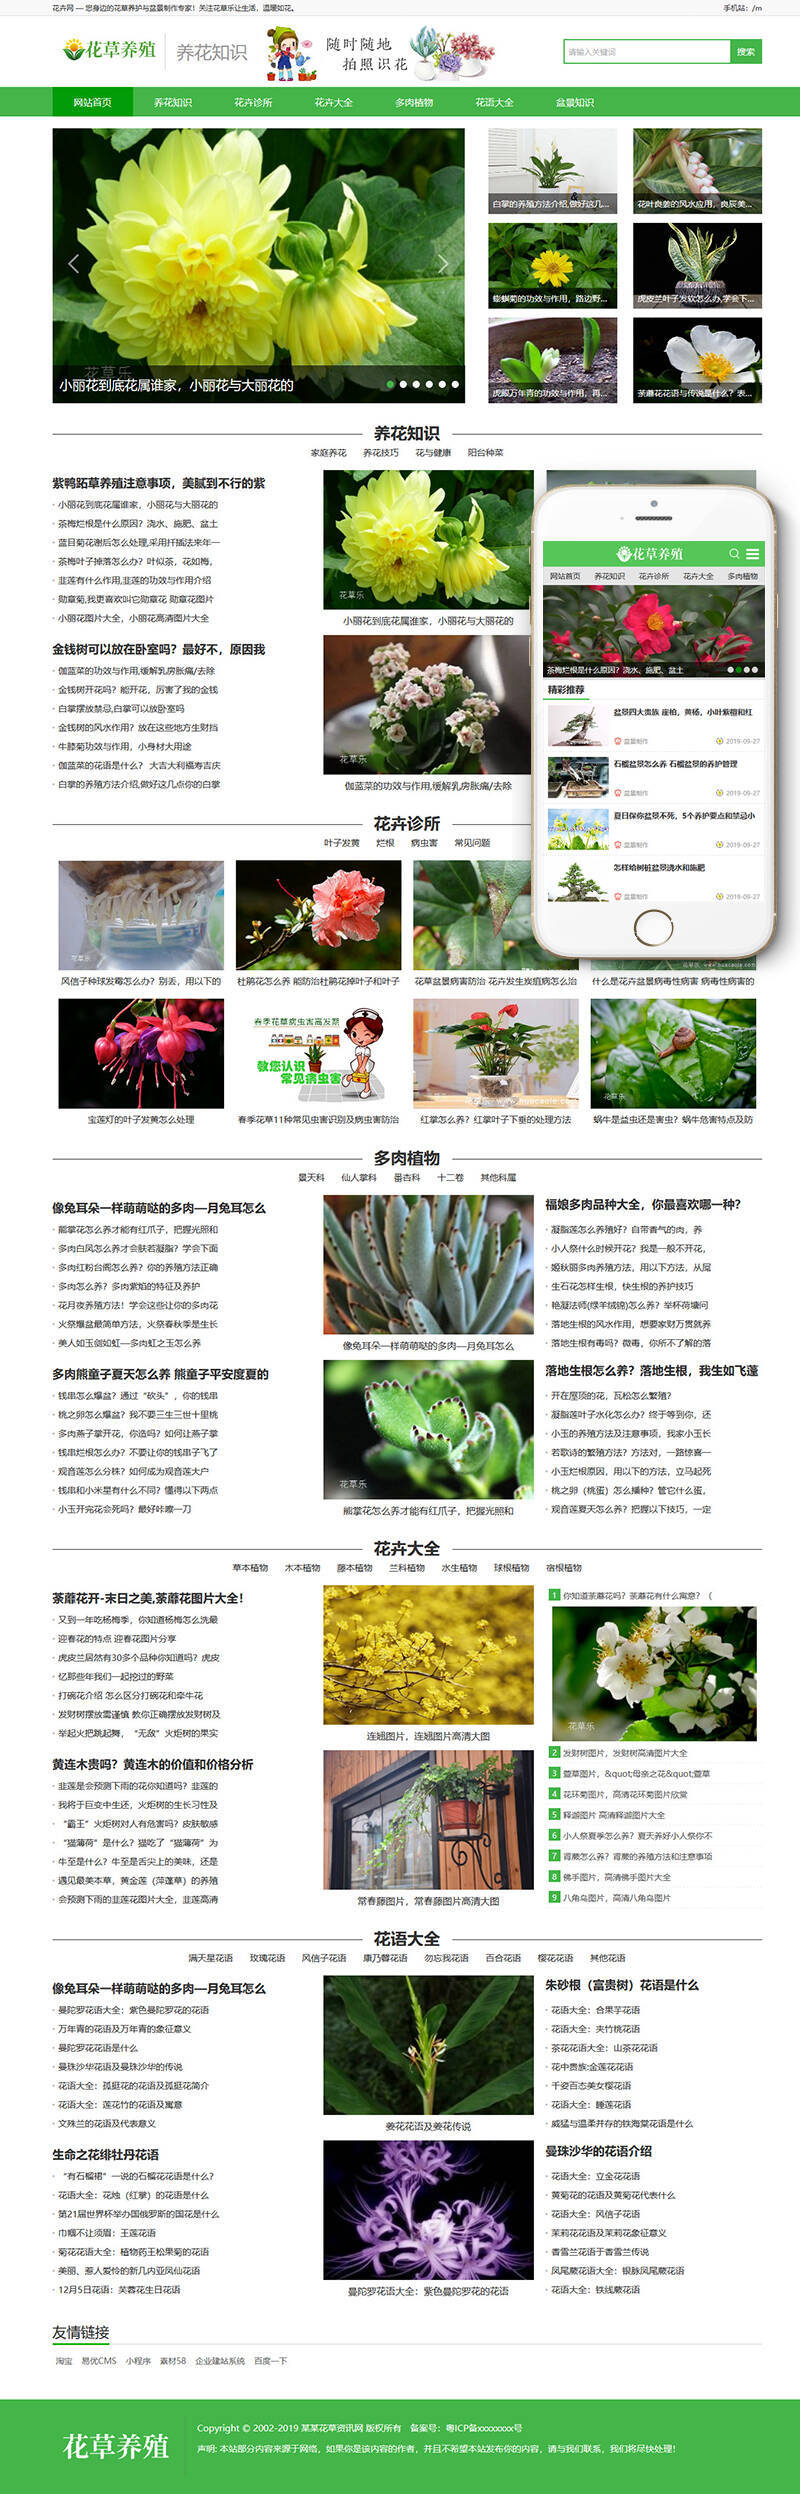 花卉养殖新闻资讯WordPress模板主题演示图